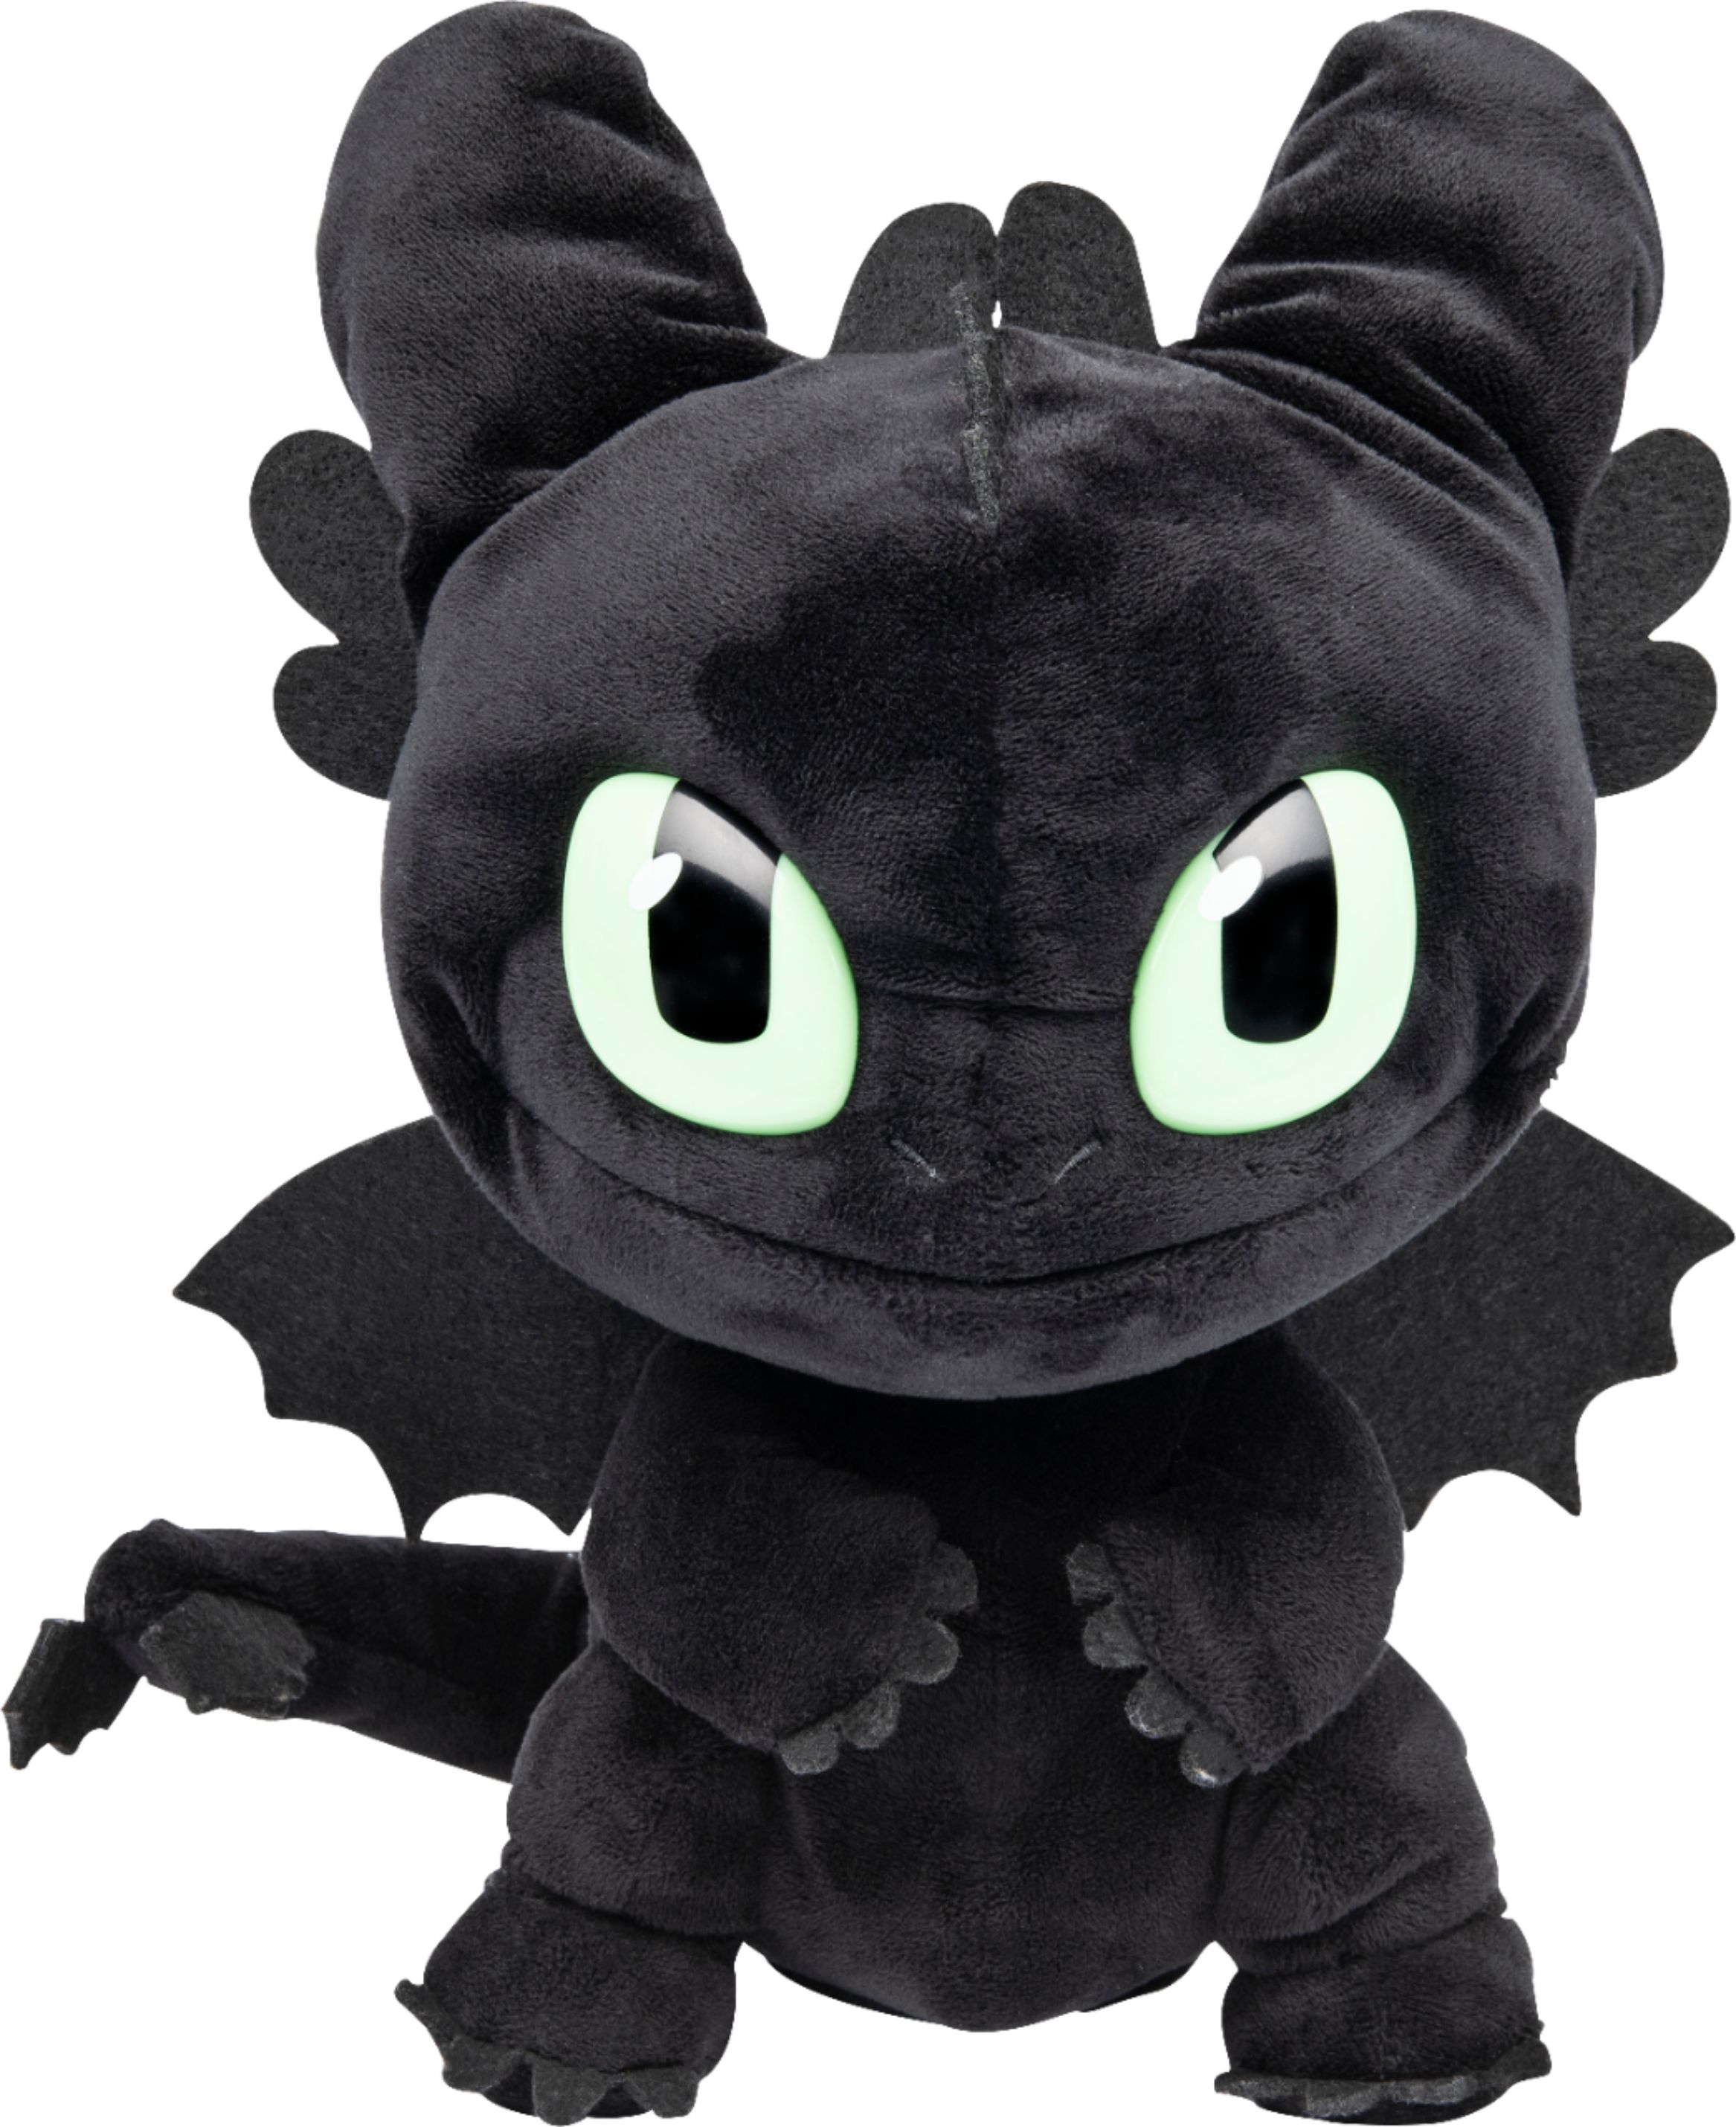 dragon plush toy